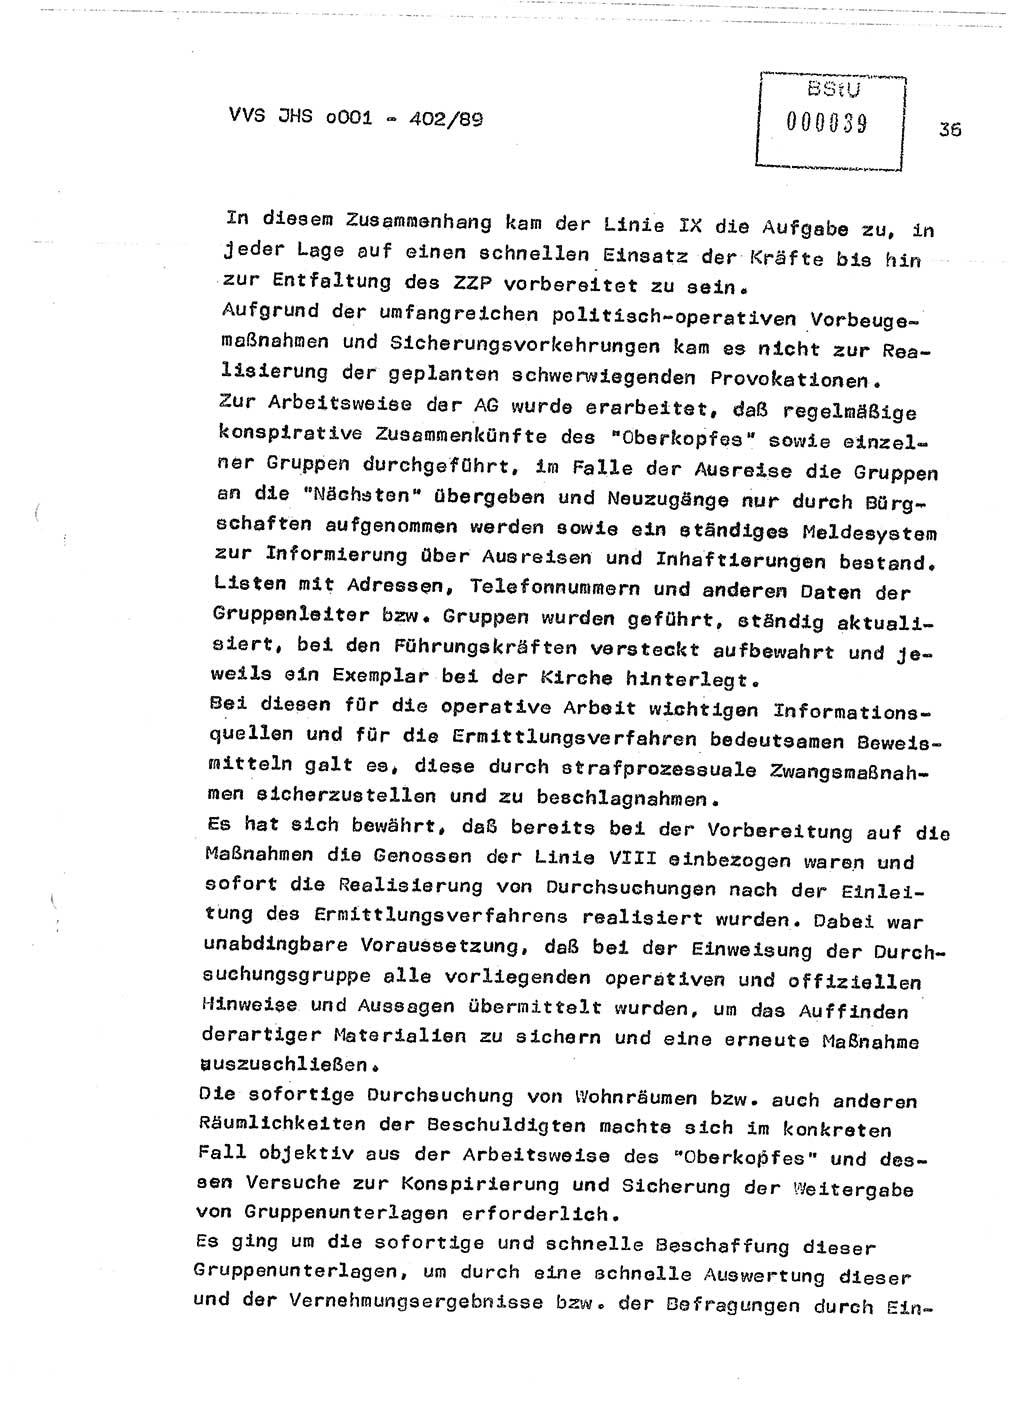 Diplomarbeit Major Günter Müller (HA Ⅸ/9), Ministerium für Staatssicherheit (MfS) [Deutsche Demokratische Republik (DDR)], Juristische Hochschule (JHS), Vertrauliche Verschlußsache (VVS) o001-402/89, Potsdam 1989, Seite 36 (Dipl.-Arb. MfS DDR JHS VVS o001-402/89 1989, S. 36)